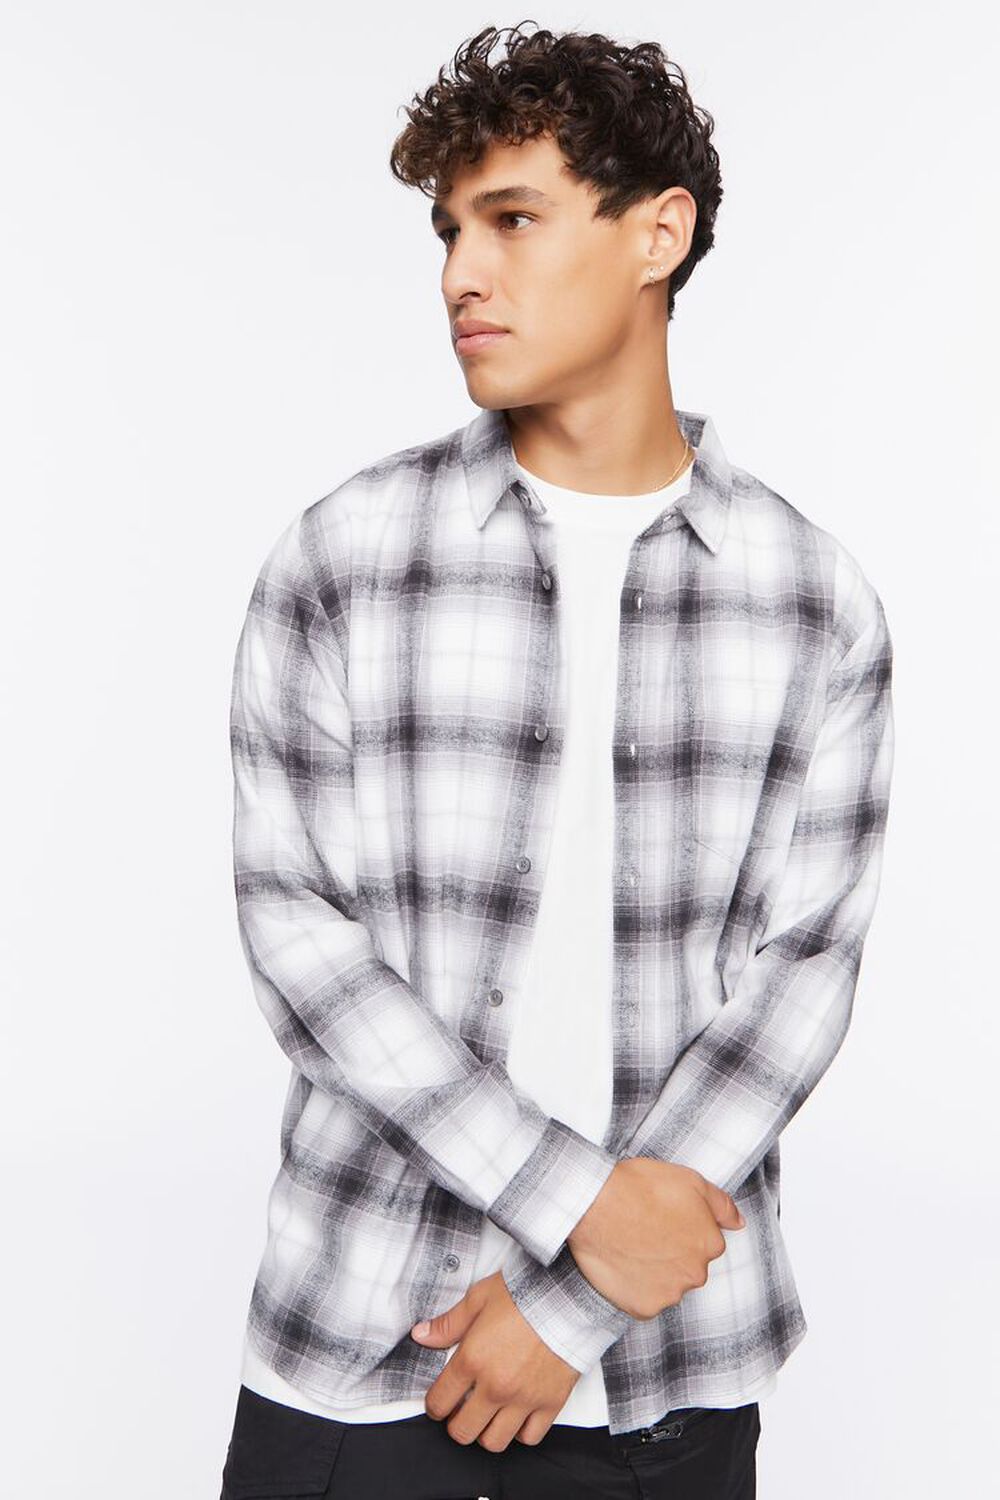 WHITE/GREY Plaid Flannel Shirt, image 1